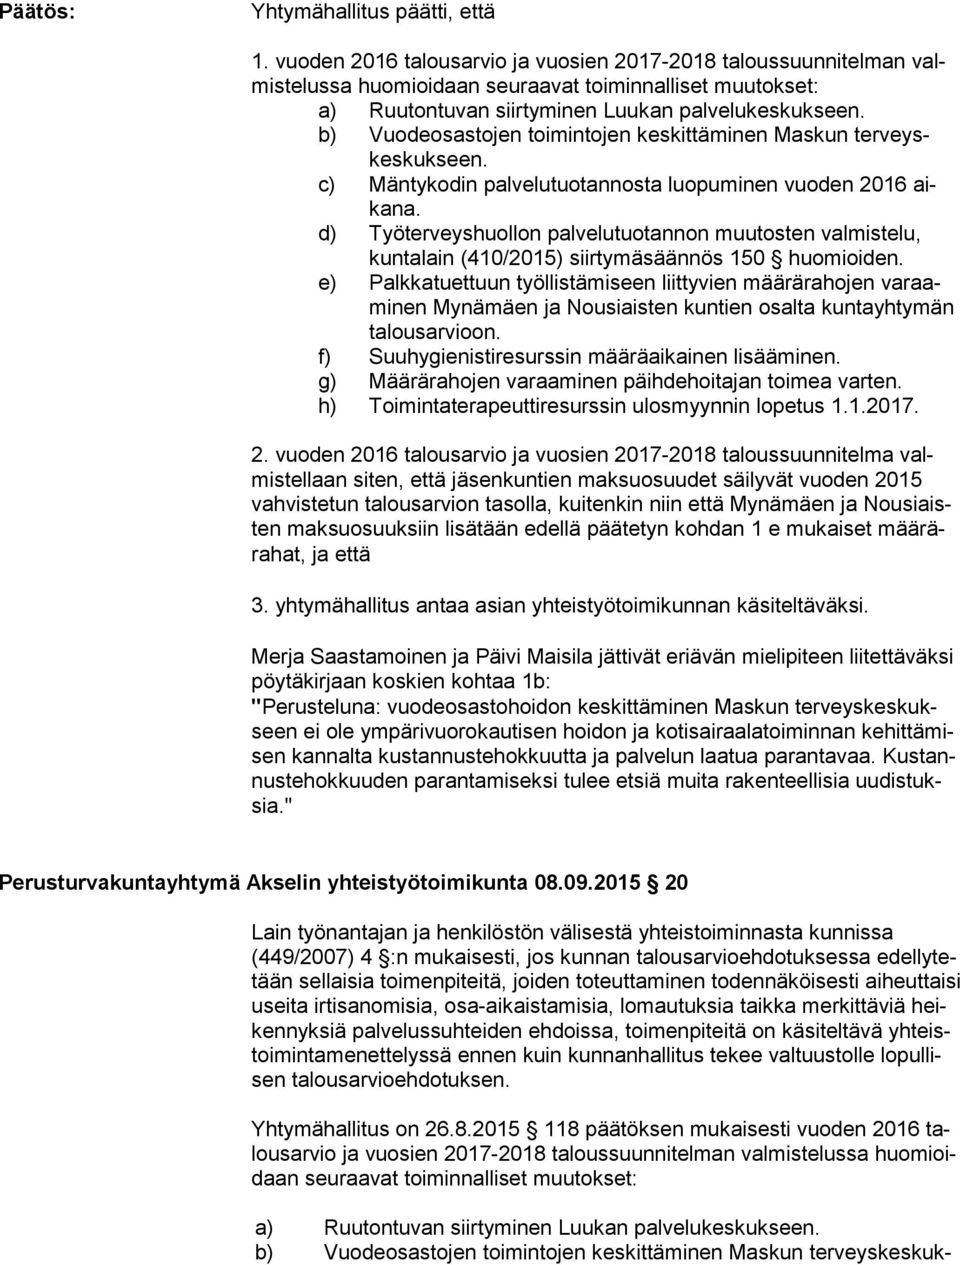 b) Vuodeosastojen toimintojen keskittäminen Maskun ter veyskes kuk seen. c) Mäntykodin palvelutuotannosta luopuminen vuoden 2016 aika na.